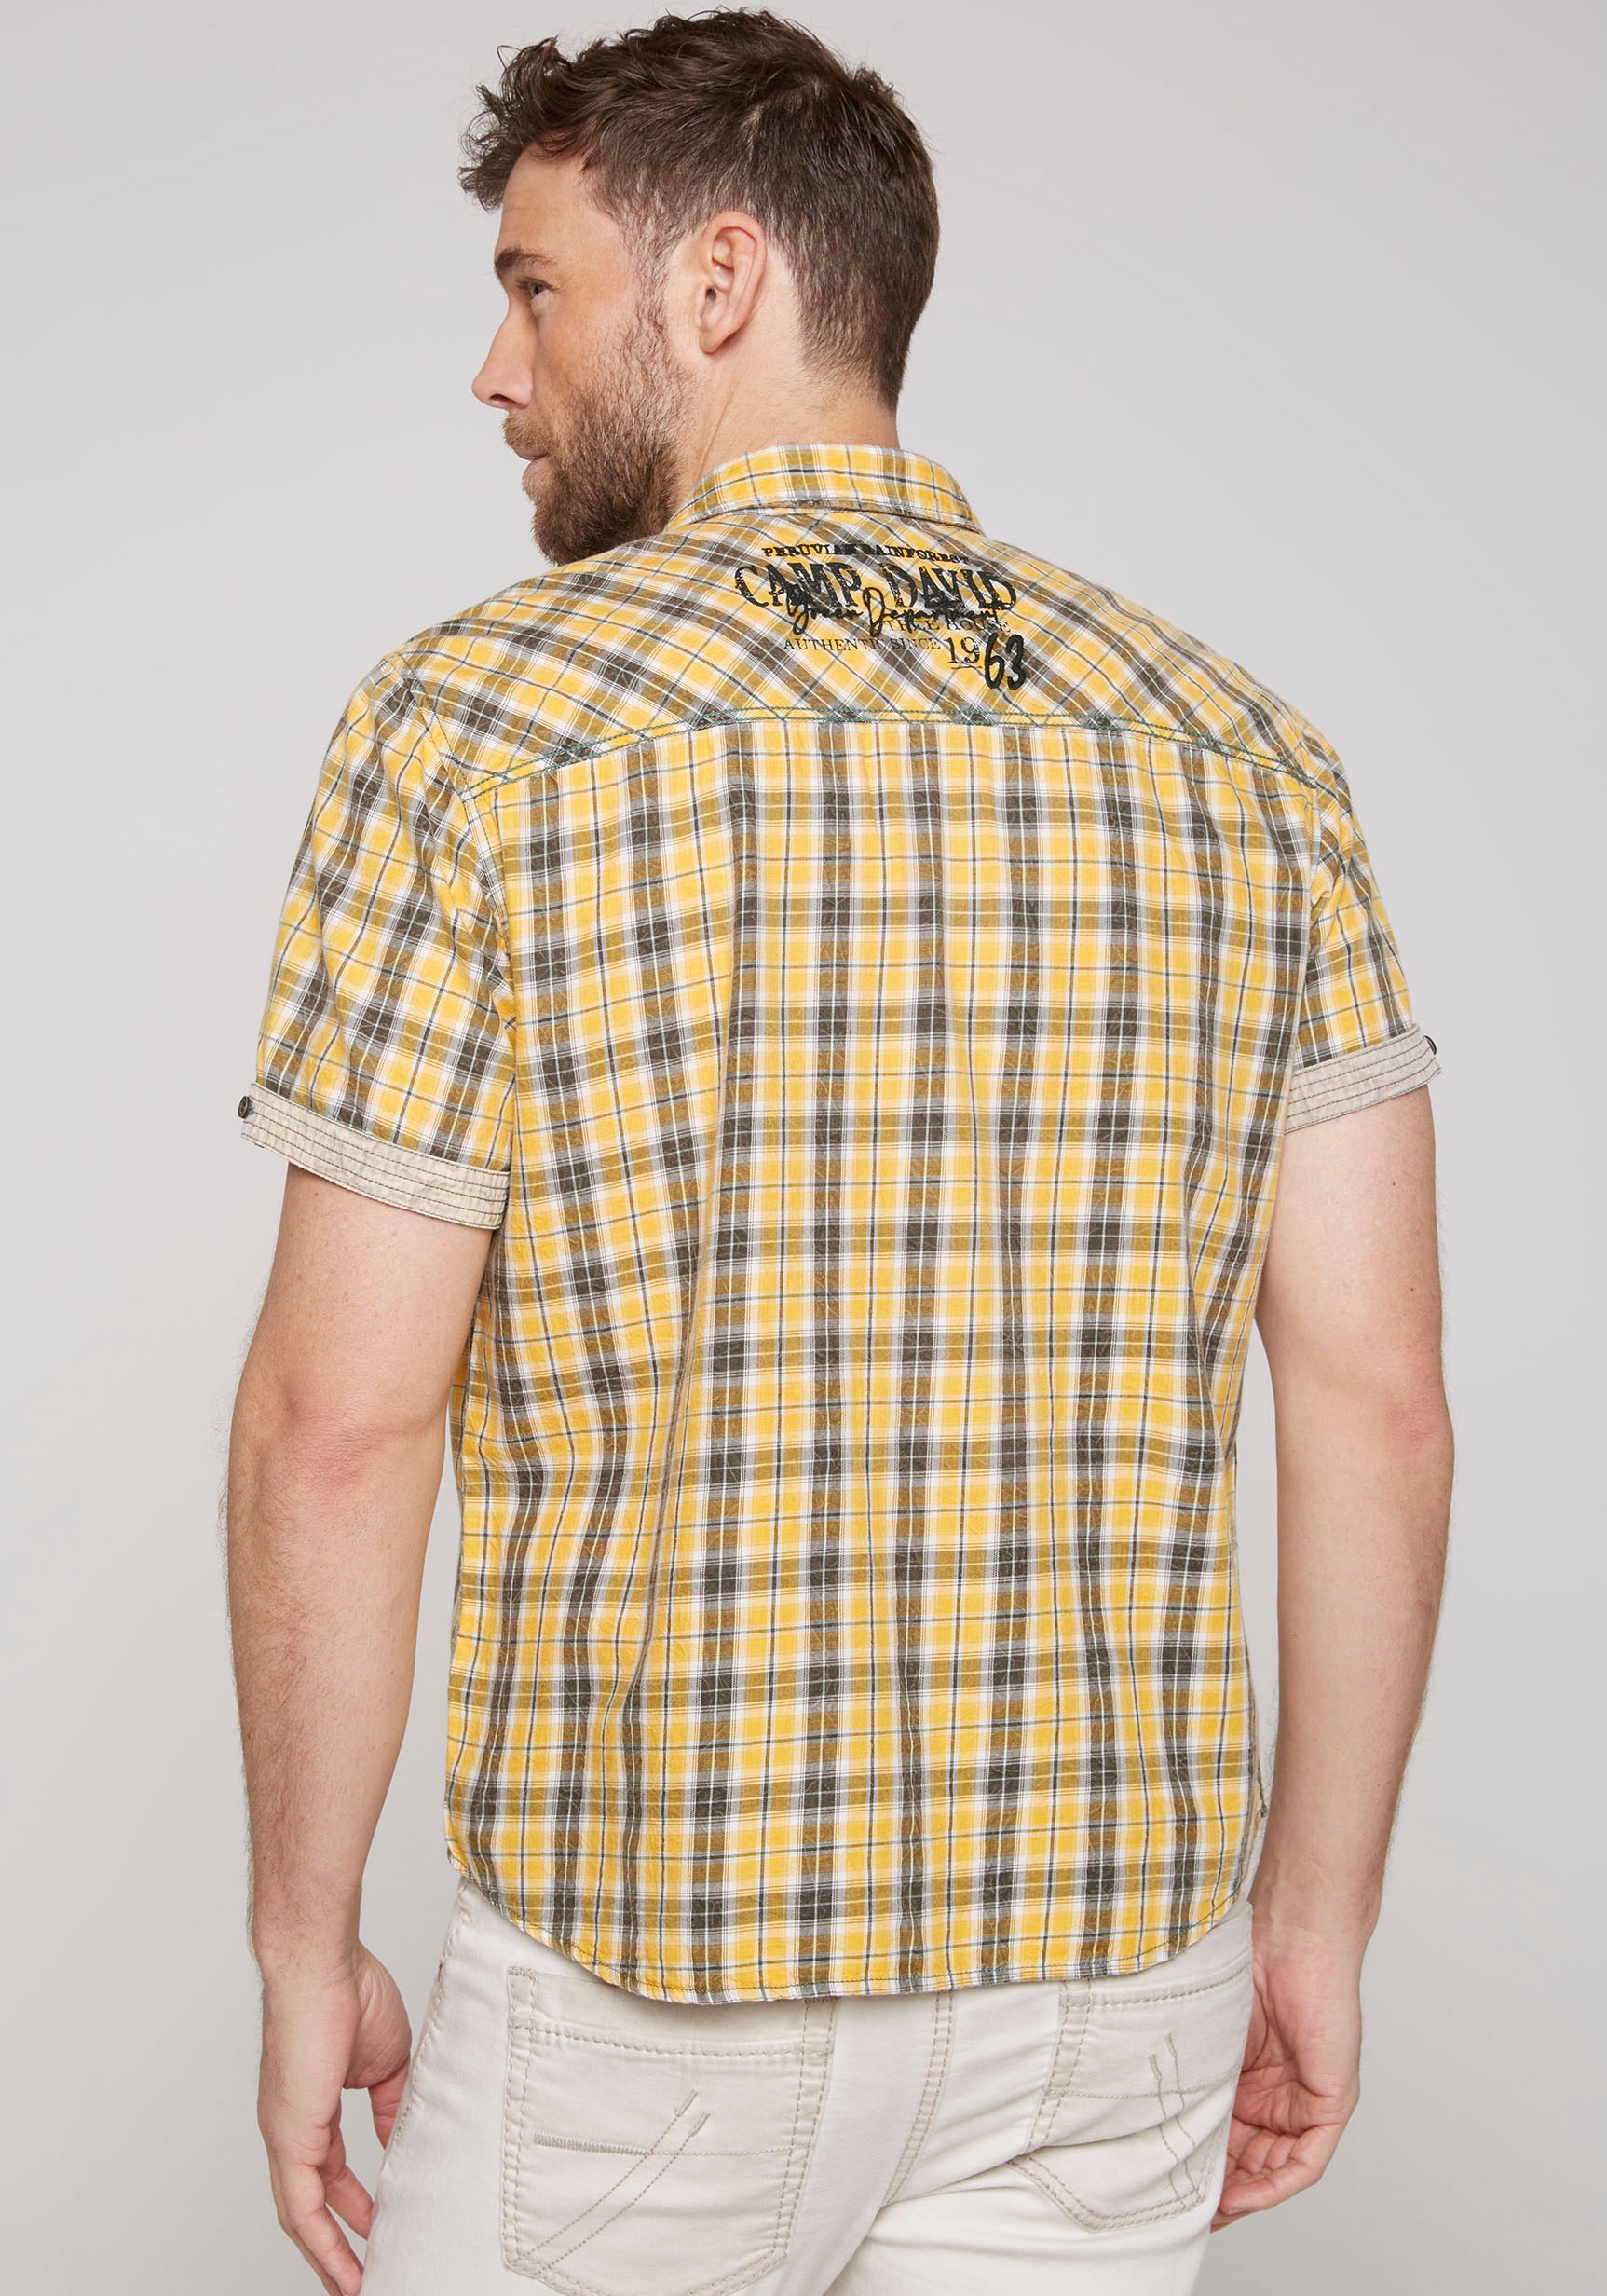 CAMP DAVID Kurzarmhemd, mit kleinem Artwork auf dem Rücken online kaufen  bei OTTO | Zip Hoodies